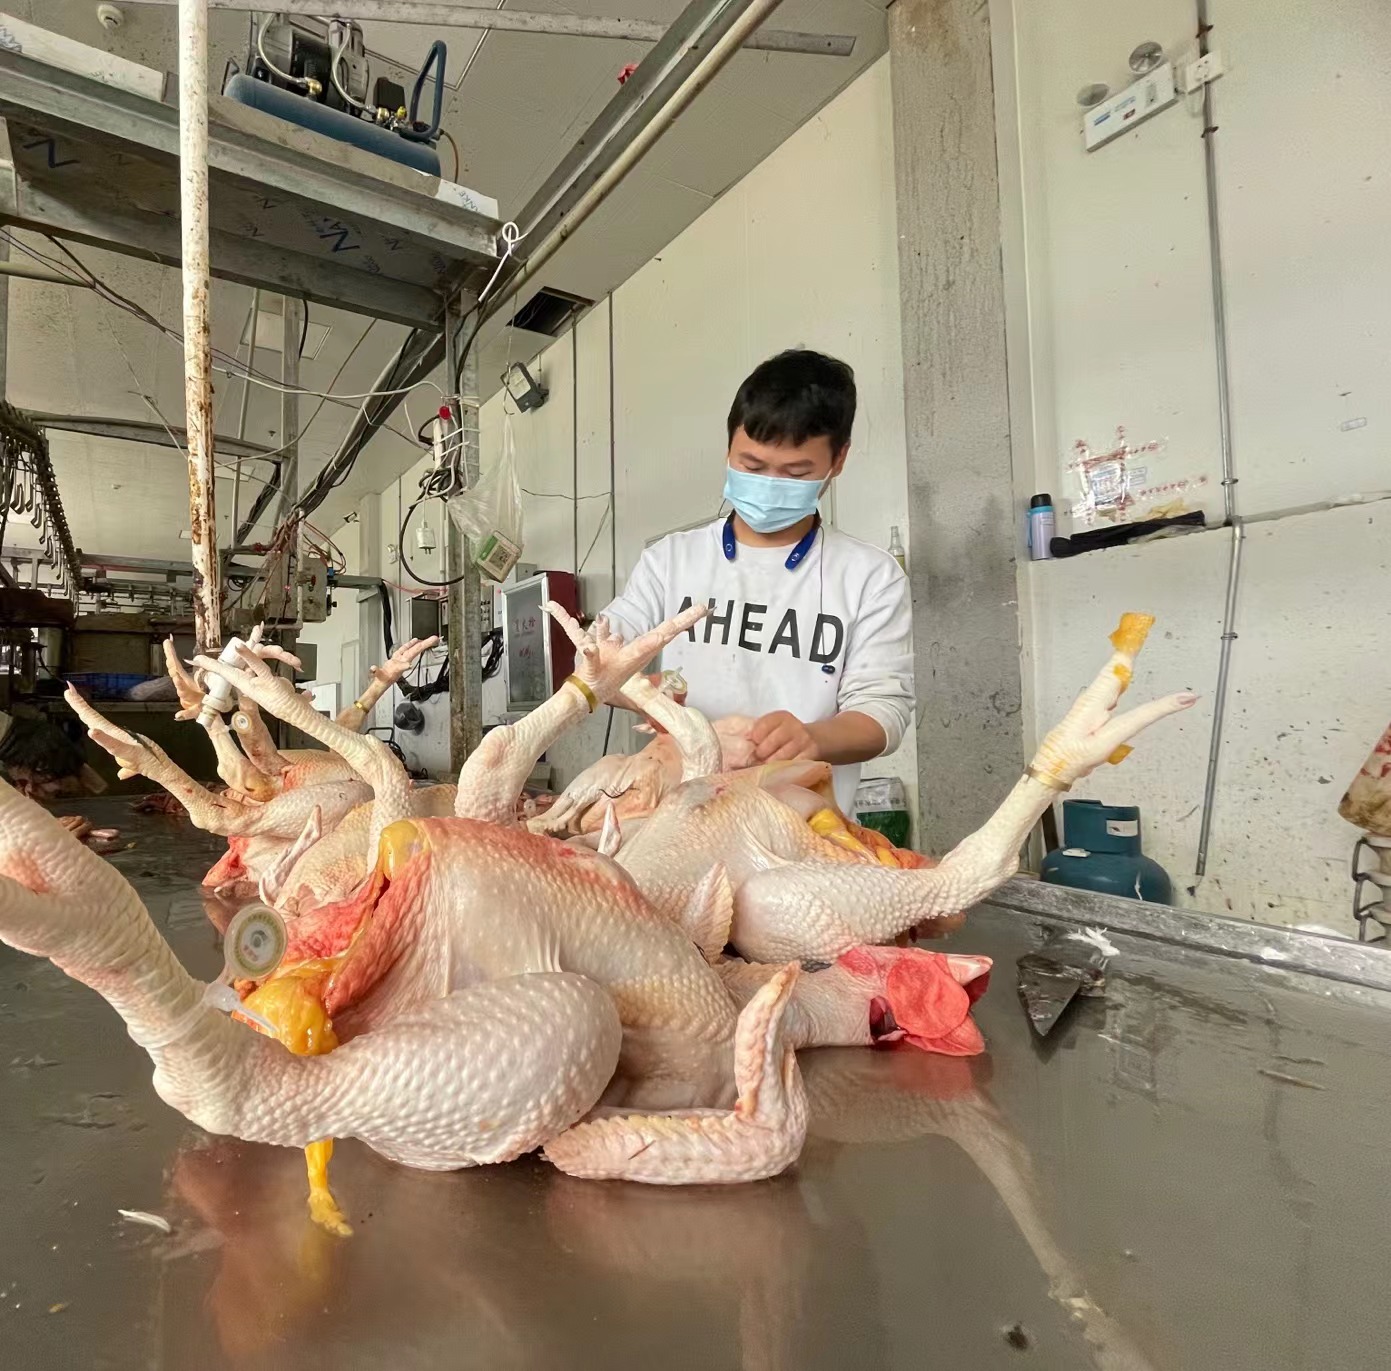 贵阳数字化禽蛋配送中心内工作人员正在加工佩戴脚环的白条禽.jpg